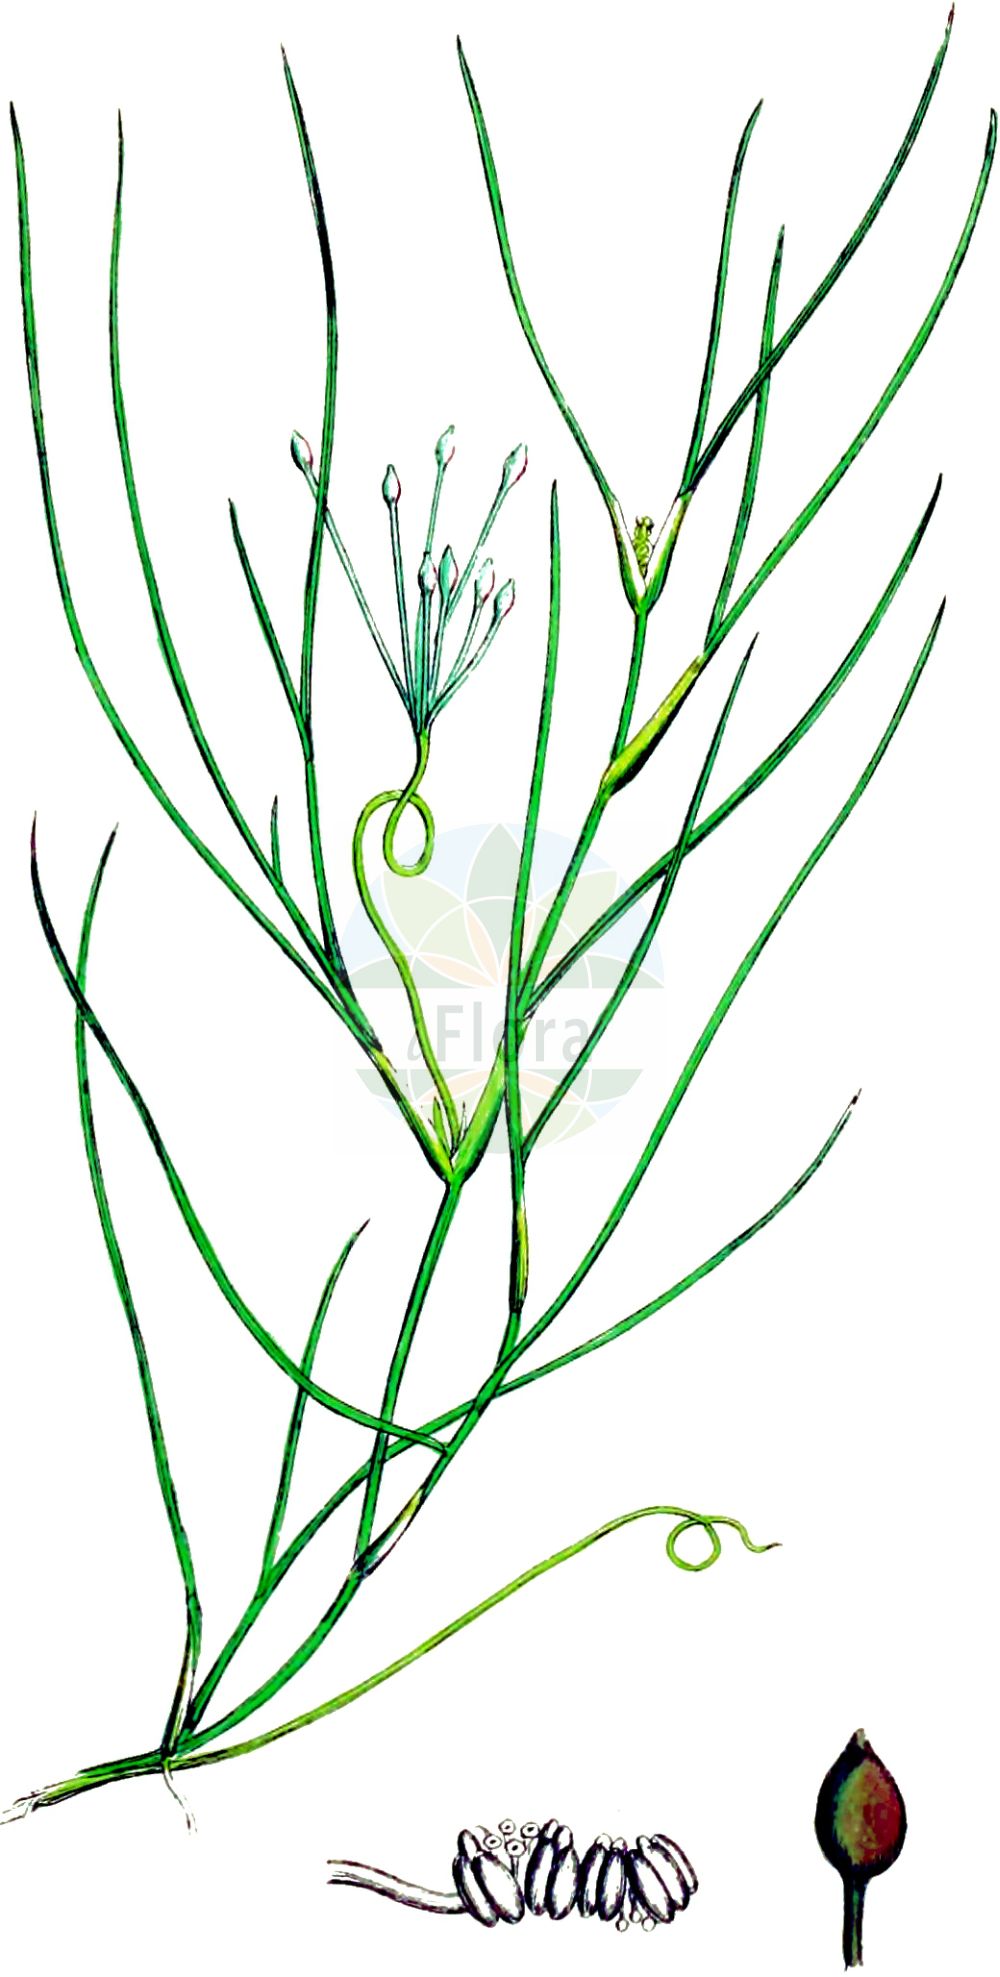 Historische Abbildung von Ruppia cirrhosa (Schraubige Salde - Spiral Tasselweed). Das Bild zeigt Blatt, Bluete, Frucht und Same. ---- Historical Drawing of Ruppia cirrhosa (Schraubige Salde - Spiral Tasselweed).The image is showing leaf, flower, fruit and seed.(Ruppia cirrhosa,Schraubige Salde,Spiral Tasselweed,Buccaferrea cirrhosa,Ruppia cirrhosa,Ruppia drepanensis,Ruppia spiralis,Schraubige Salde,Spiralige Ruppie,Spiral Tasselweed,Ditchgrass,Spiral Ditchgrass,Tassel Pondweed,Ruppia,Salde,Widgeonweed,Ruppiaceae,Saldengewaechse,Widgeonweed family,Blatt,Bluete,Frucht,Same,leaf,flower,fruit,seed,Sowerby (1790-1813))